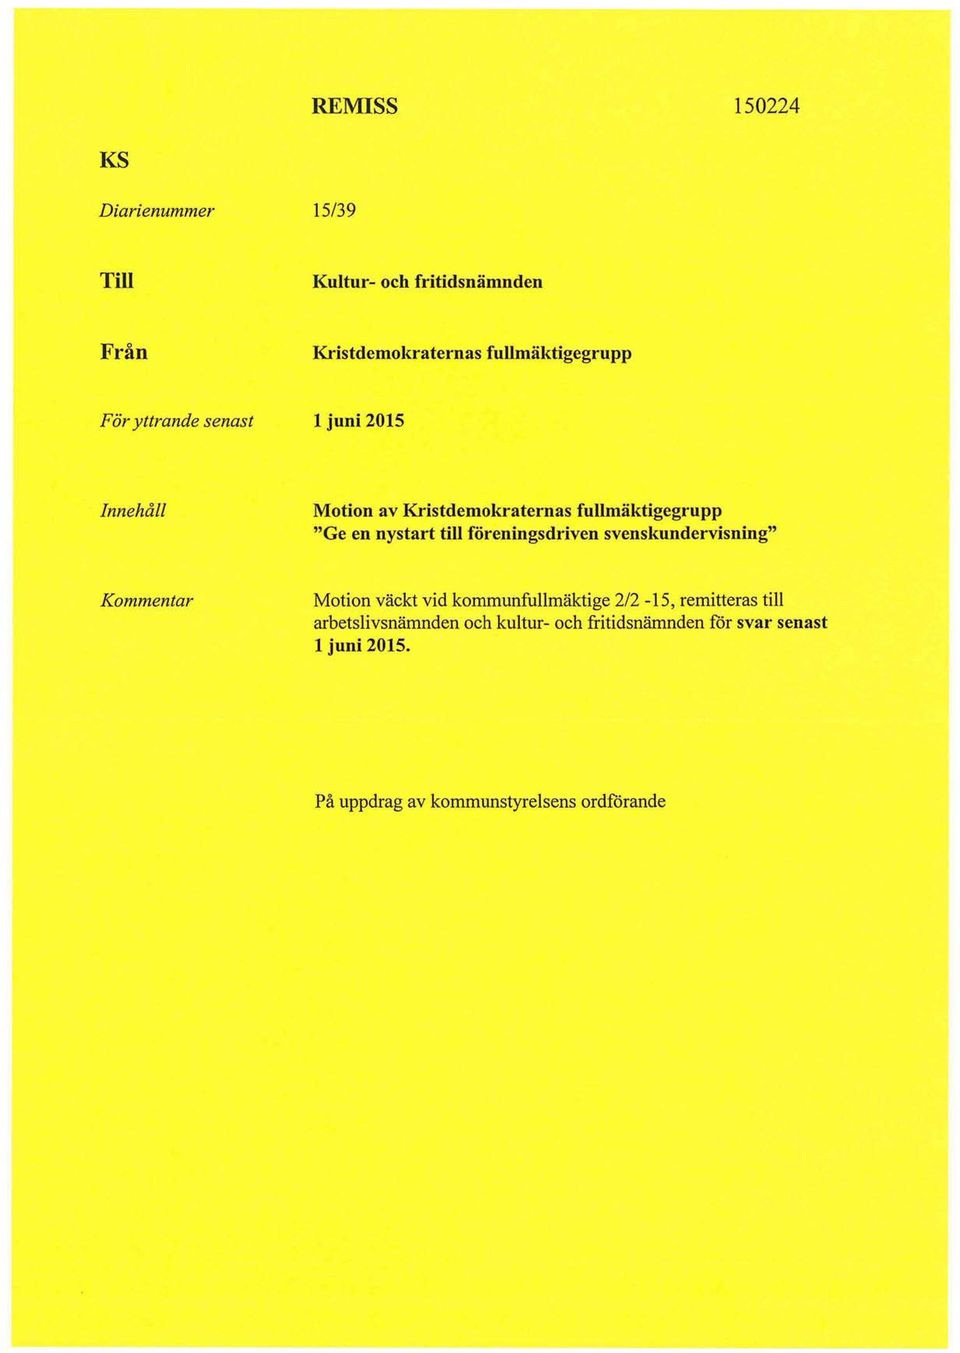 föreningsdriven svenskundervisning" Kommentar Motion väckt vid kommunfullmäktige 2/2-15, remitteras till